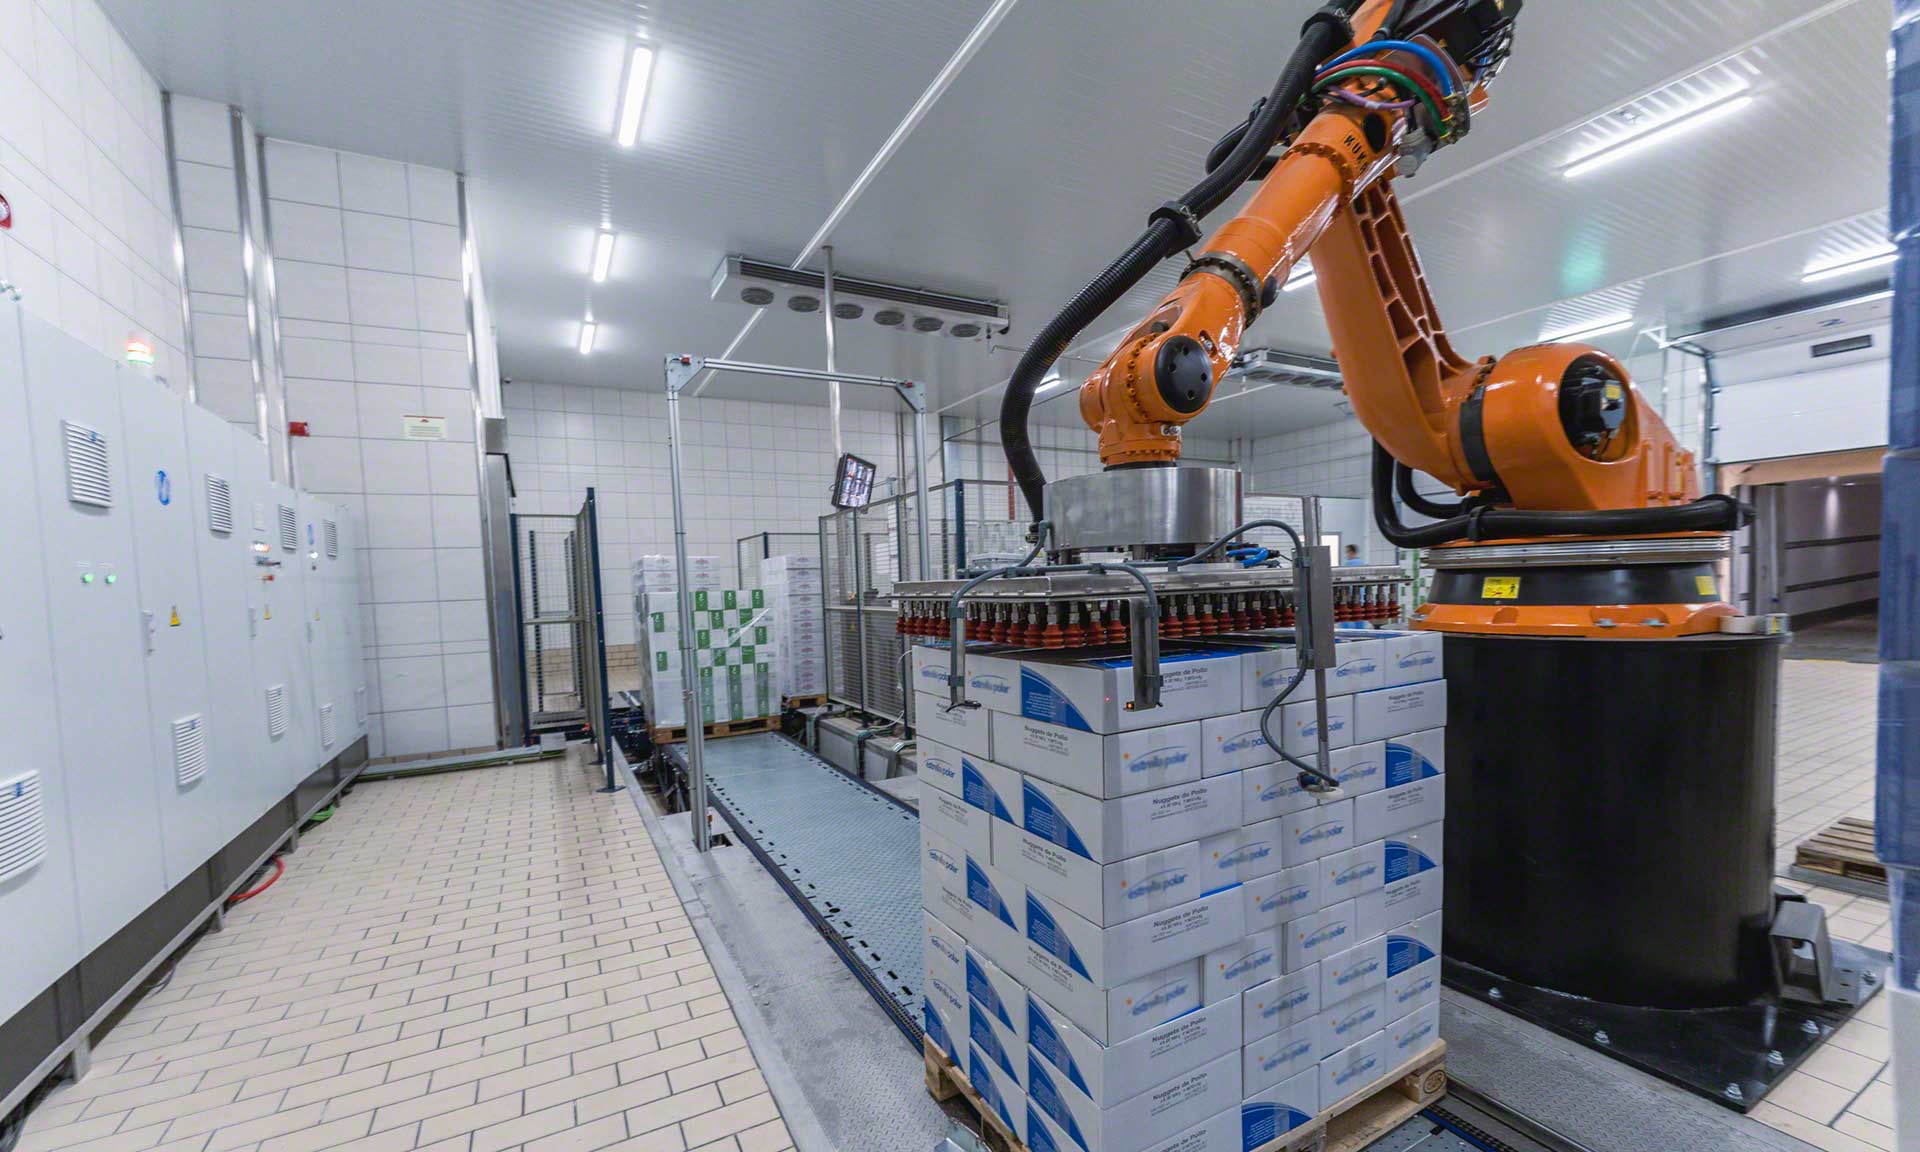 仓库机器人:技术使物流自动化